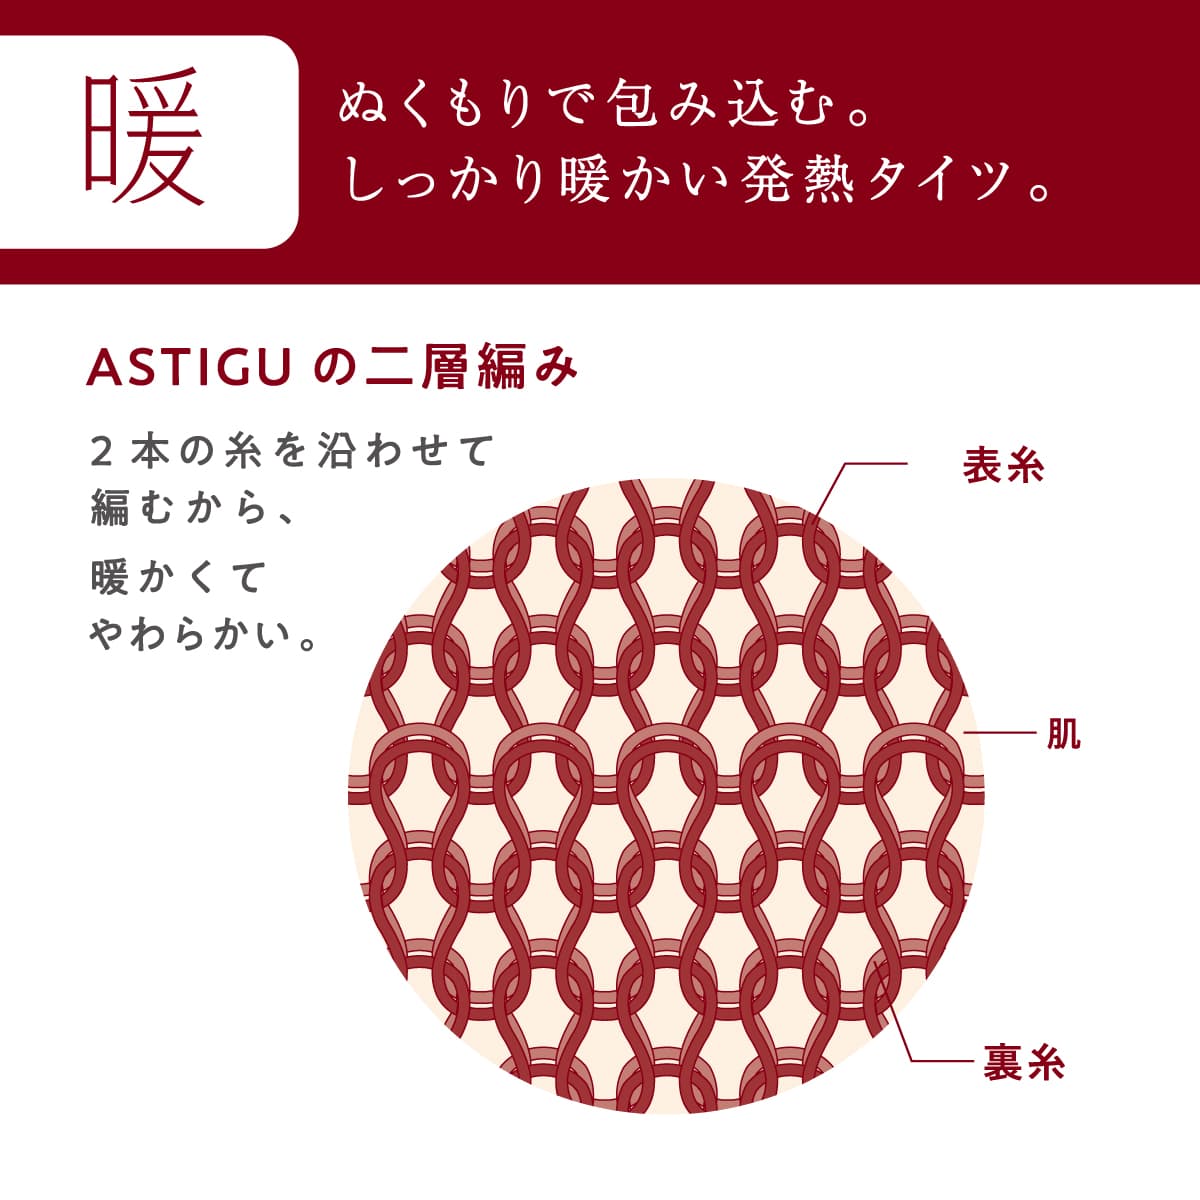 ASTIGU 【暖】心地よいぬくもり 60デニールタイツ